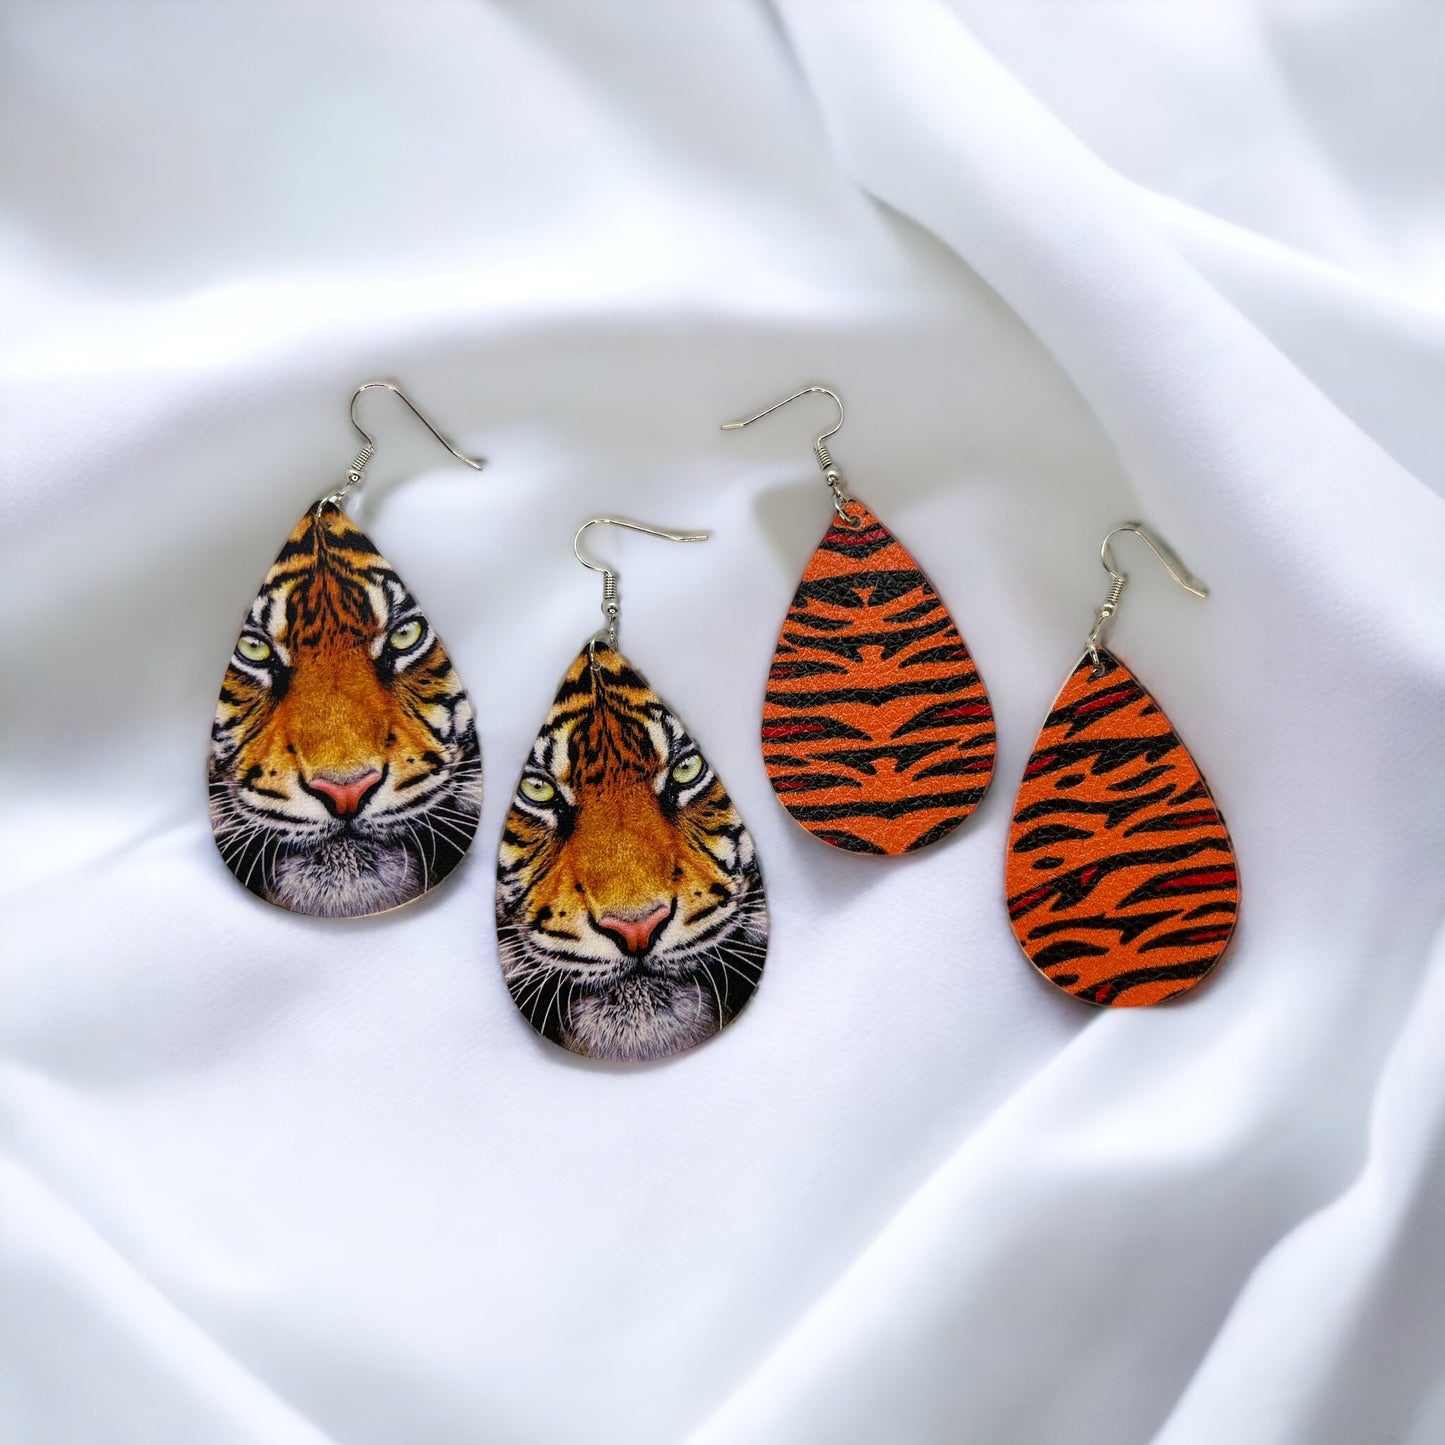 Tiger Earrings - Tigers Earrings, Handmade Jewelry, Tiger Jewelry, Bengals Jewelry, Tiger Earrings, Tigers Earrings, Bengal Tiger, Football